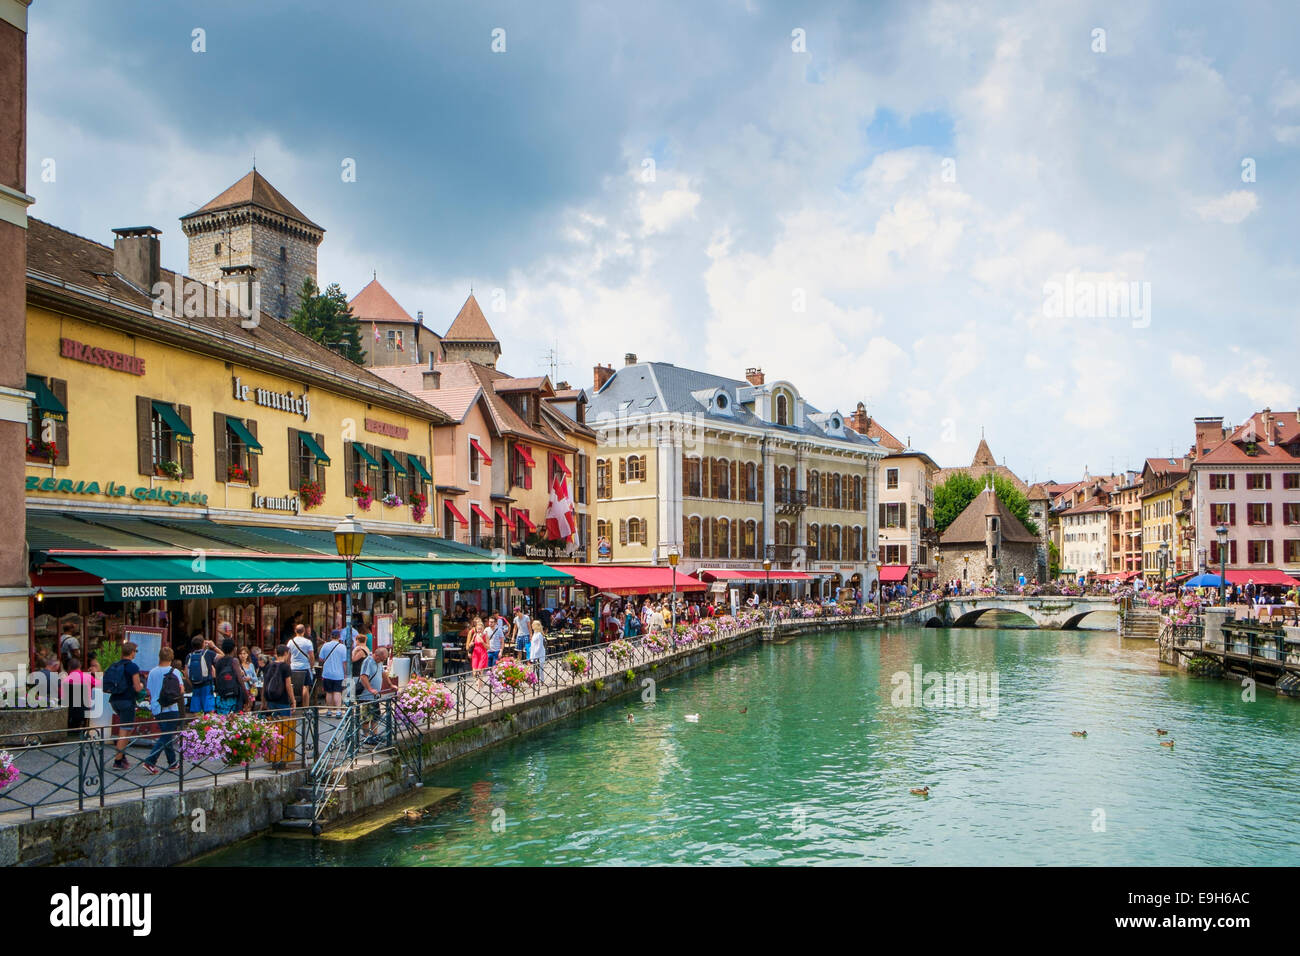 Touristen Masse der Waterfront Restaurants, Bars und Geschäfte in der schönen Altstadt von Annecy, Frankreich, Haute-Savoie Stockfoto